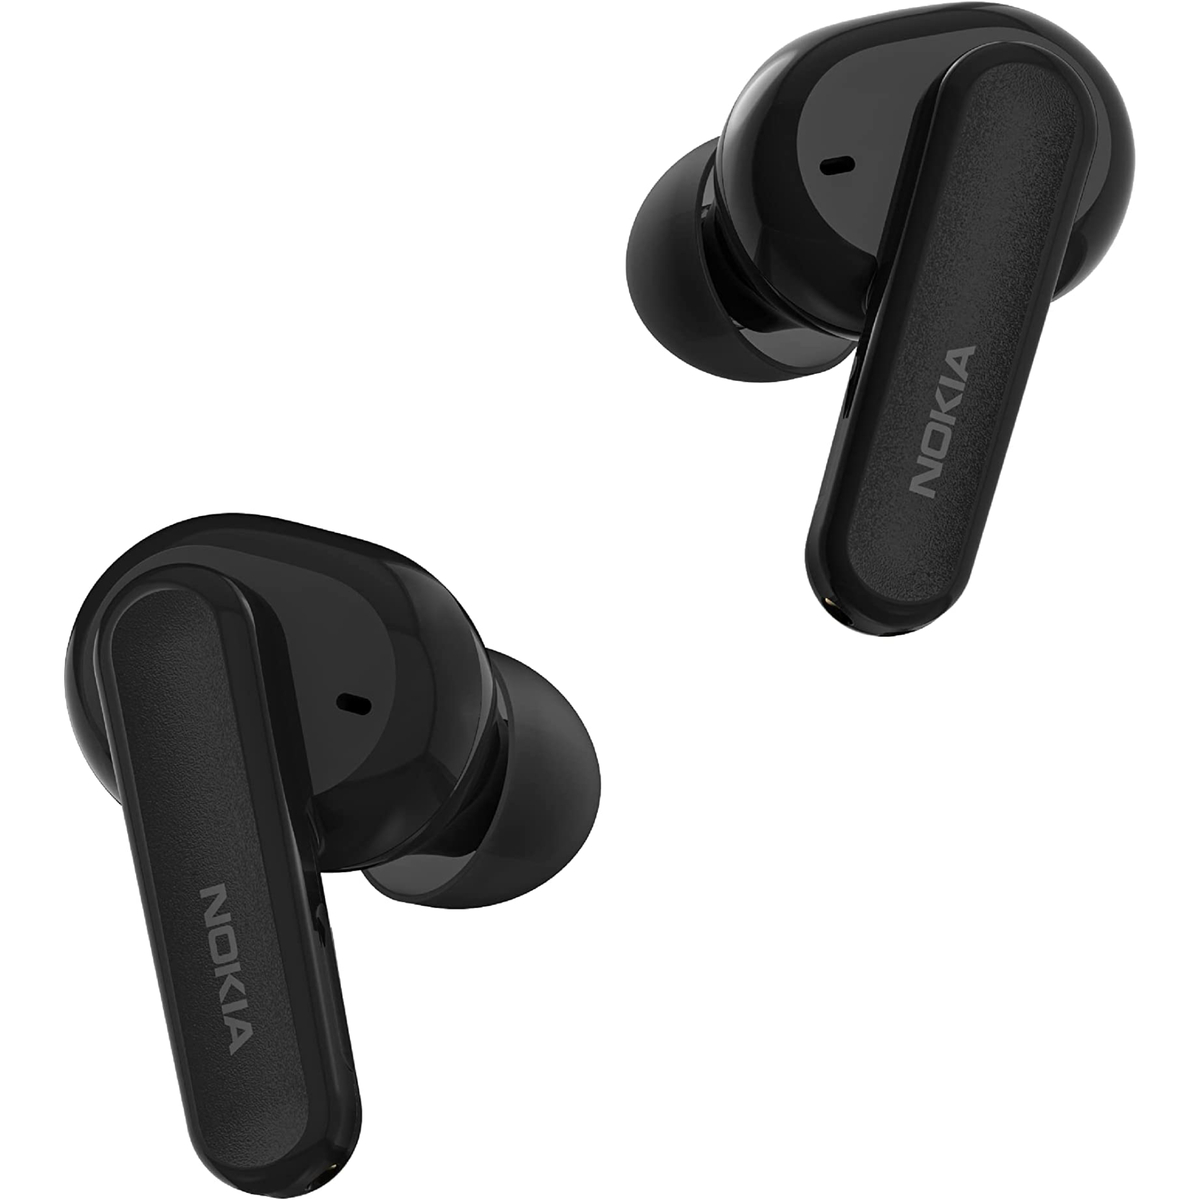 Nokia Go In-Ear True Wireless Noise Cancelling Earbuds2 Pro, Black, TWS-222